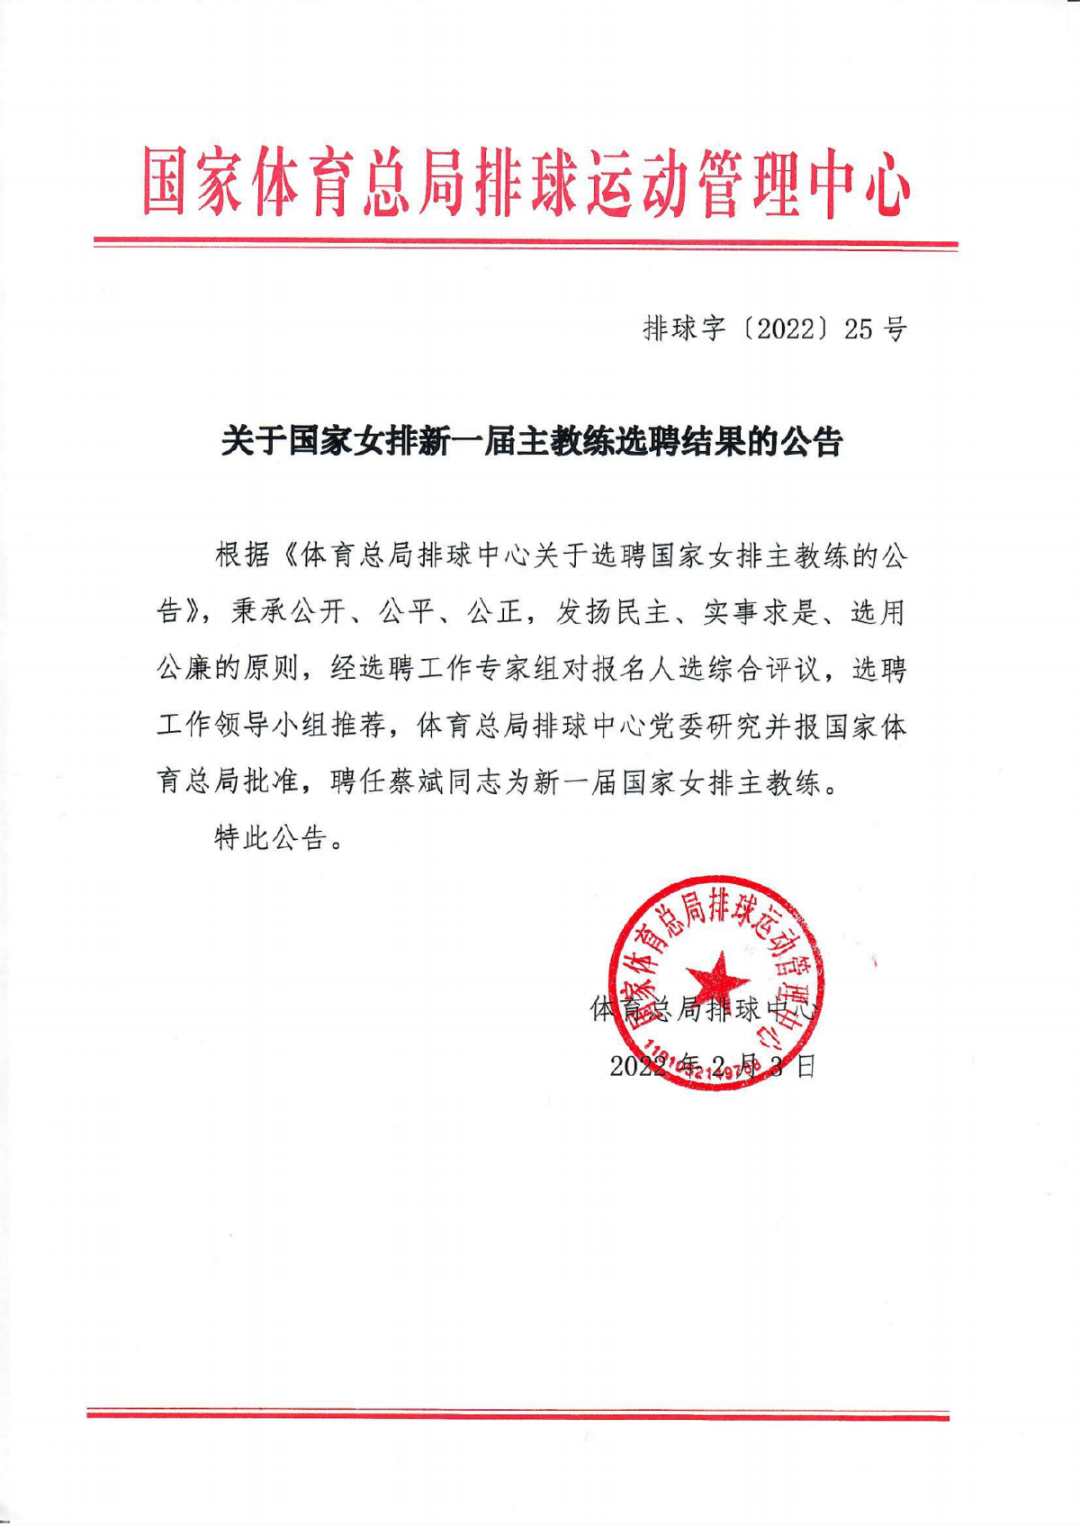 上海市|蔡斌出任新一届中国女排主教练